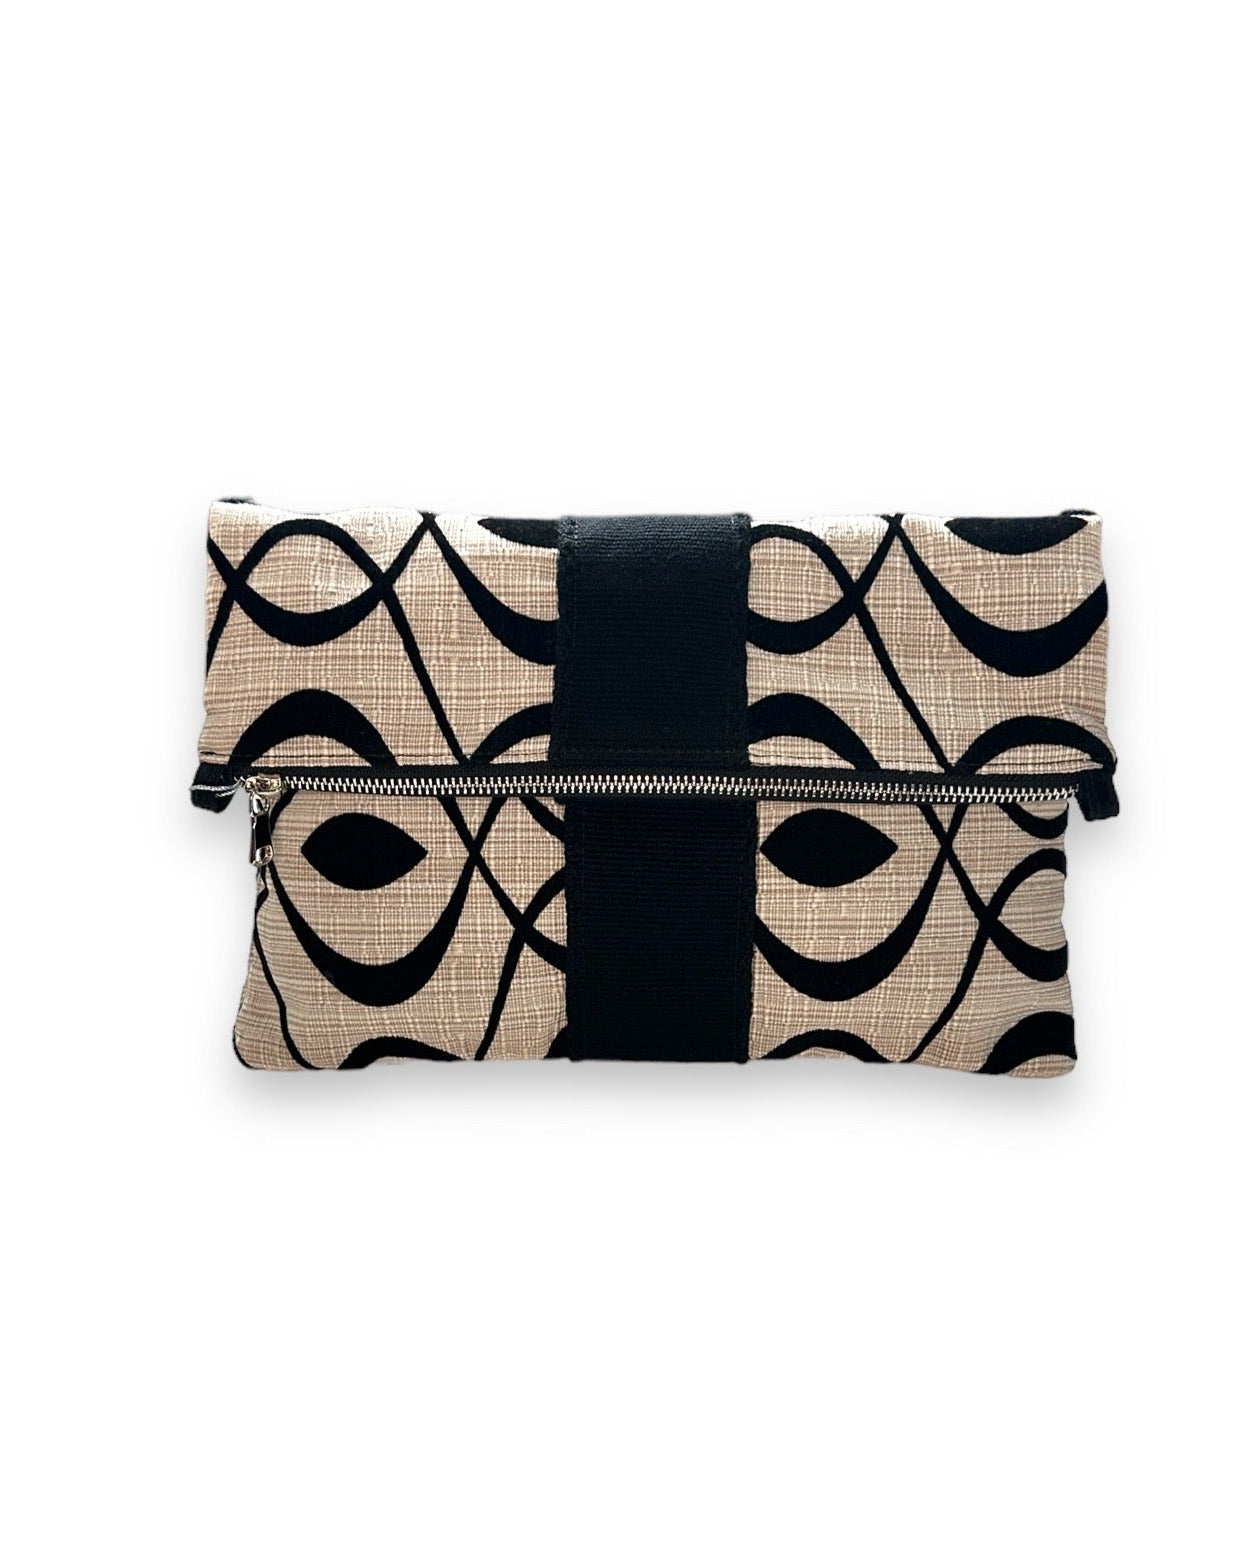 Cream and black felted swirl folded clutch bag with Wayuu trim. 